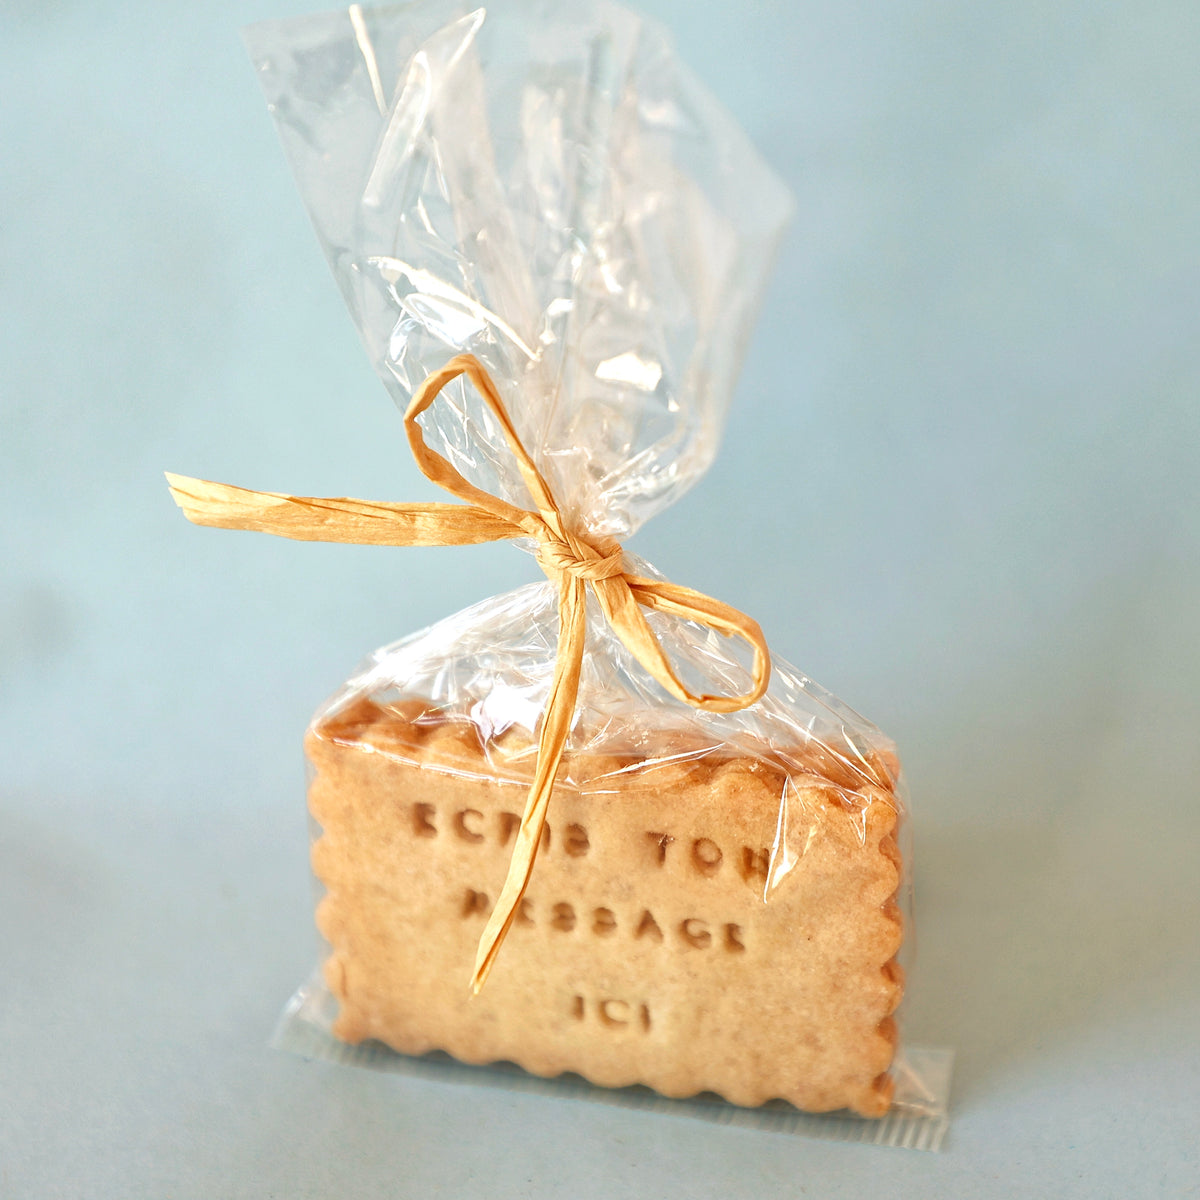 Ballotin de 1 biscuit (vendu par lot de 20) – Kriké Kroké